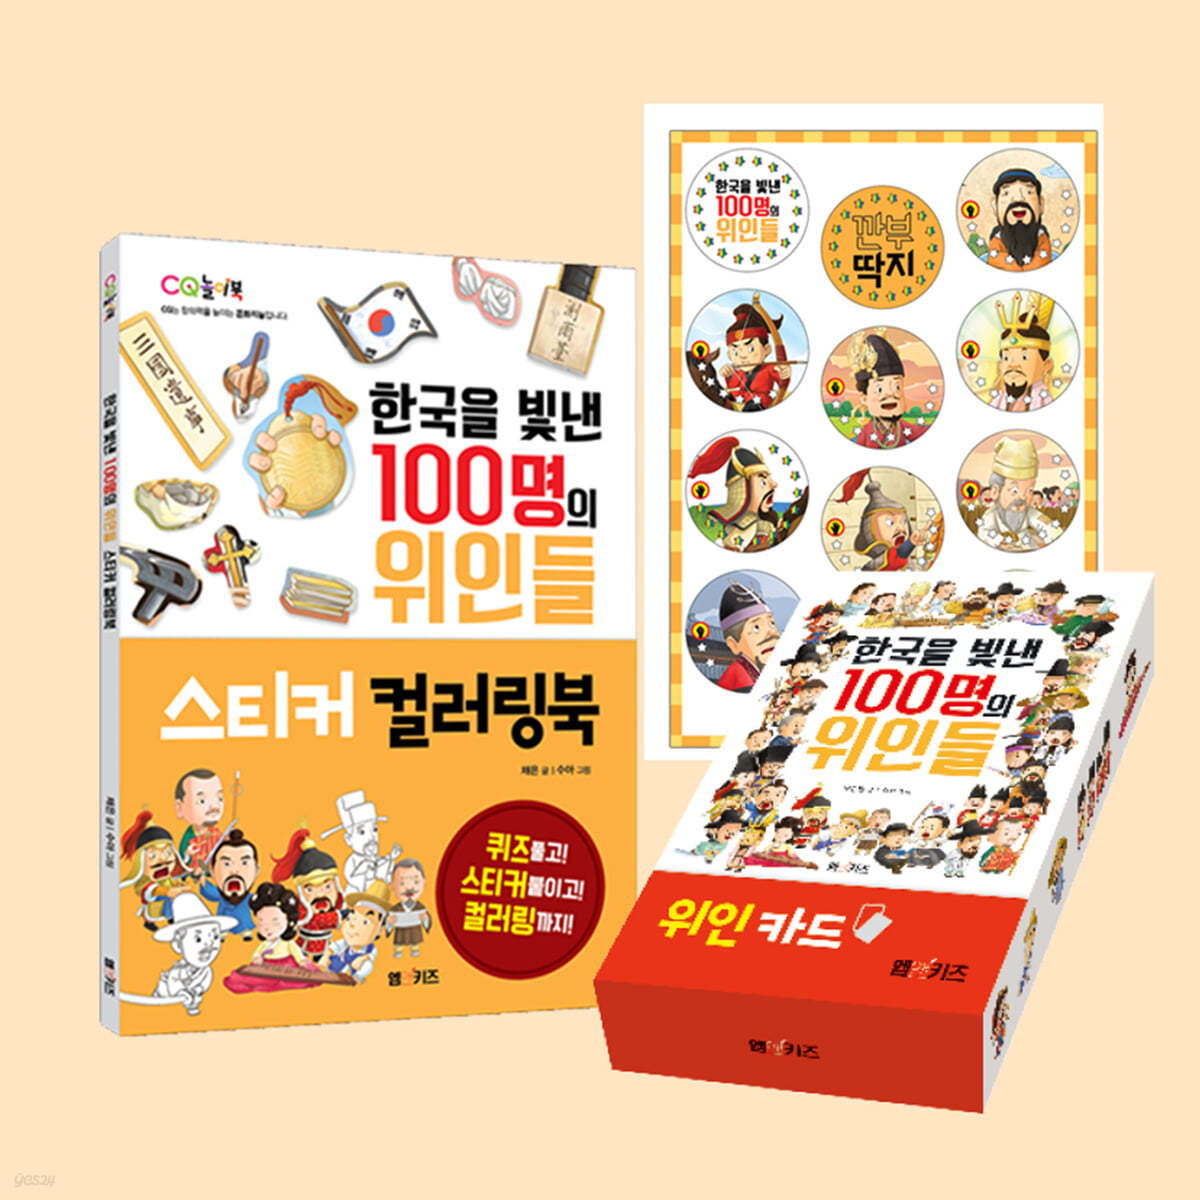 한국을 빛낸 100명의 위인들 스티커 컬러링북 + 깐부 딱지 + 위인 카드 세트